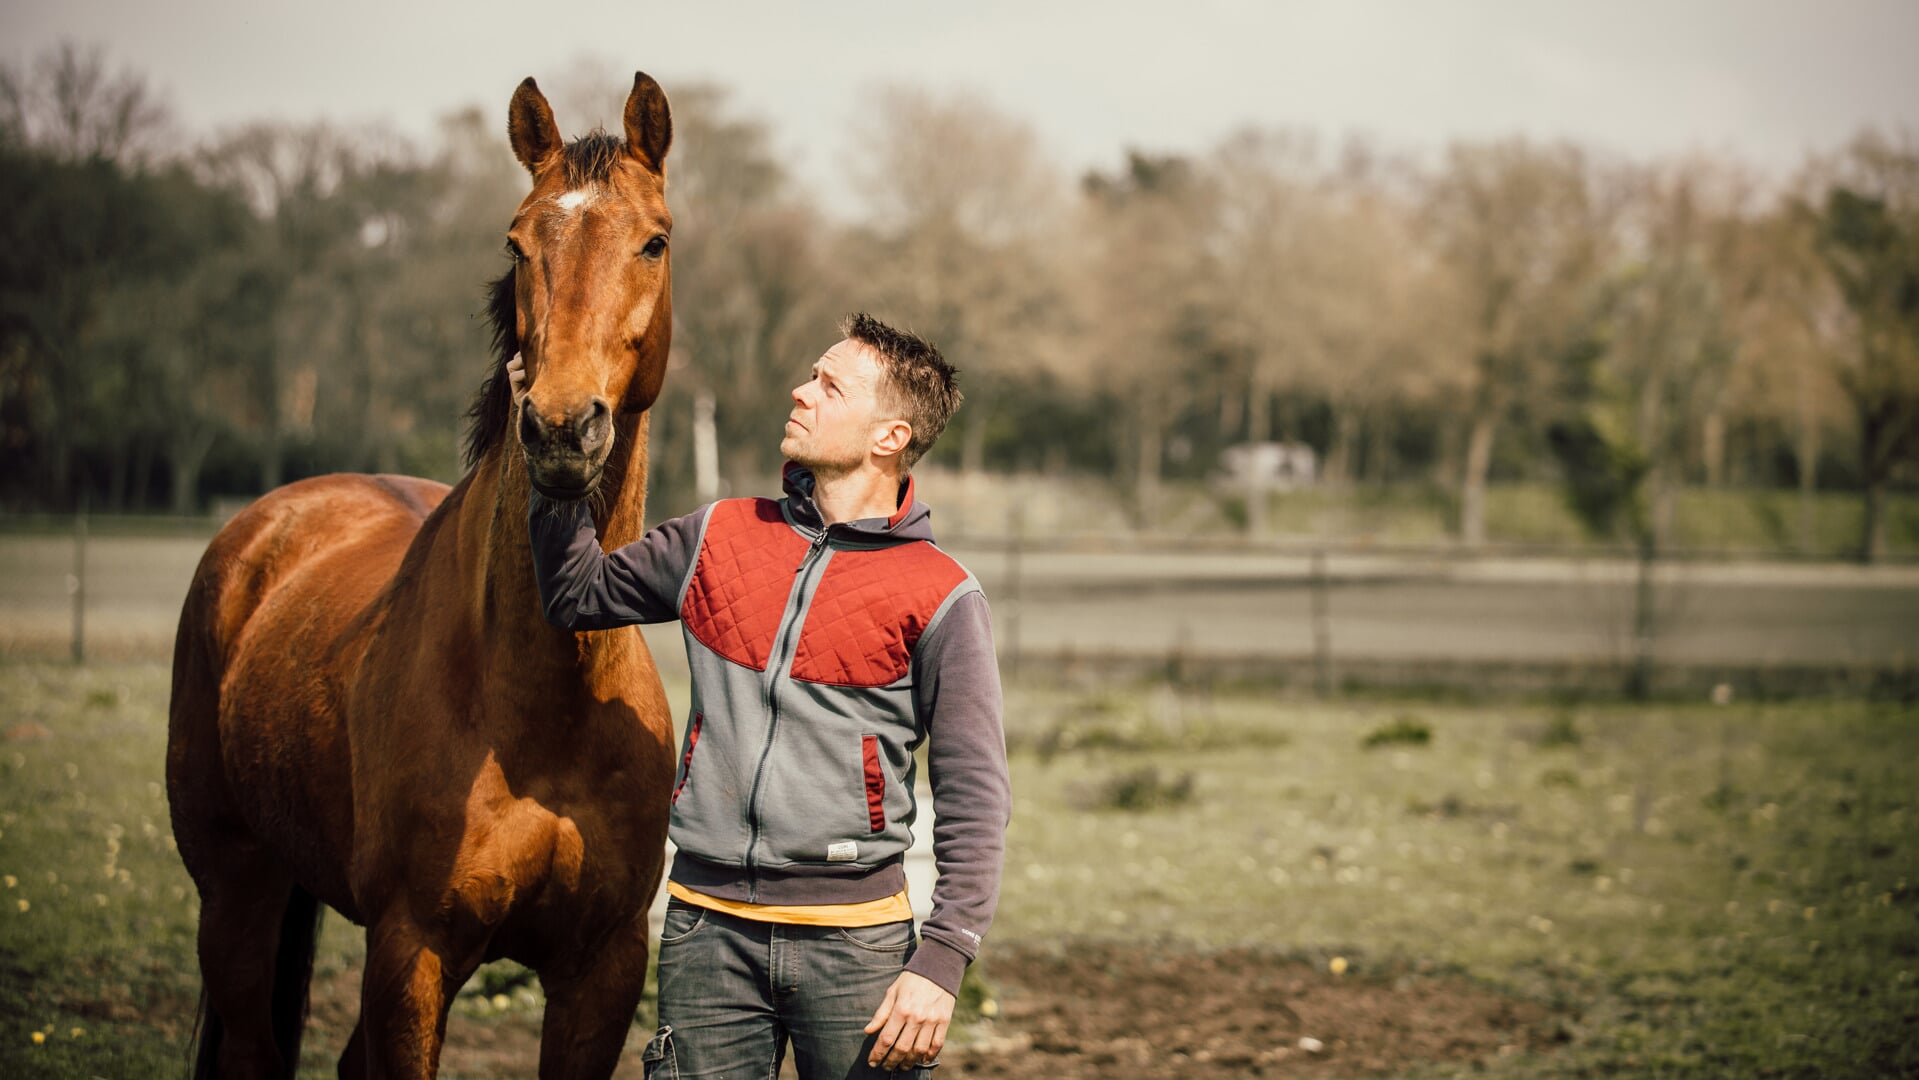 Maarten Wenting, de Grand Prix ruiter, die zijn paarden 24/7 in de wei laat, is een van de deelnemers aan het NewQuestrian Event.